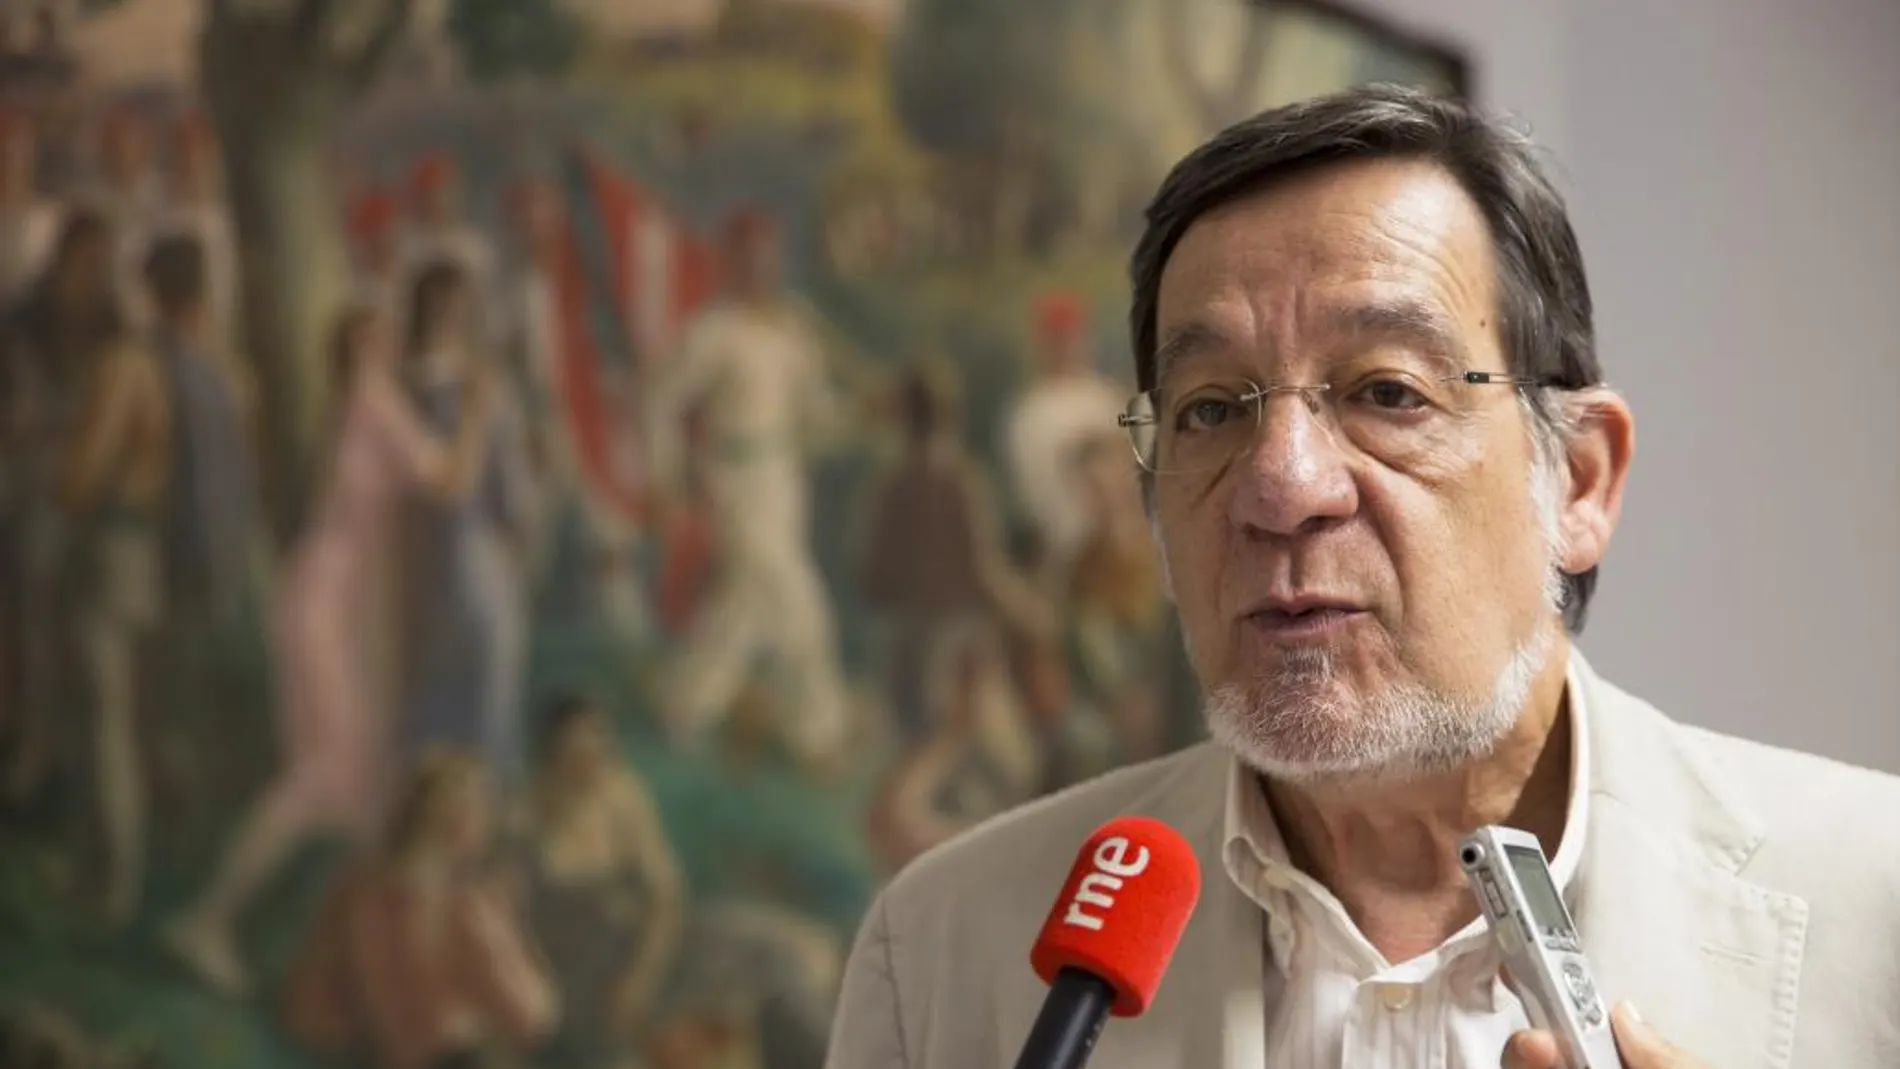 El presidente de la Junta Electoral del País Vasco, Juan Luis Ibarra, atiende a los medios.